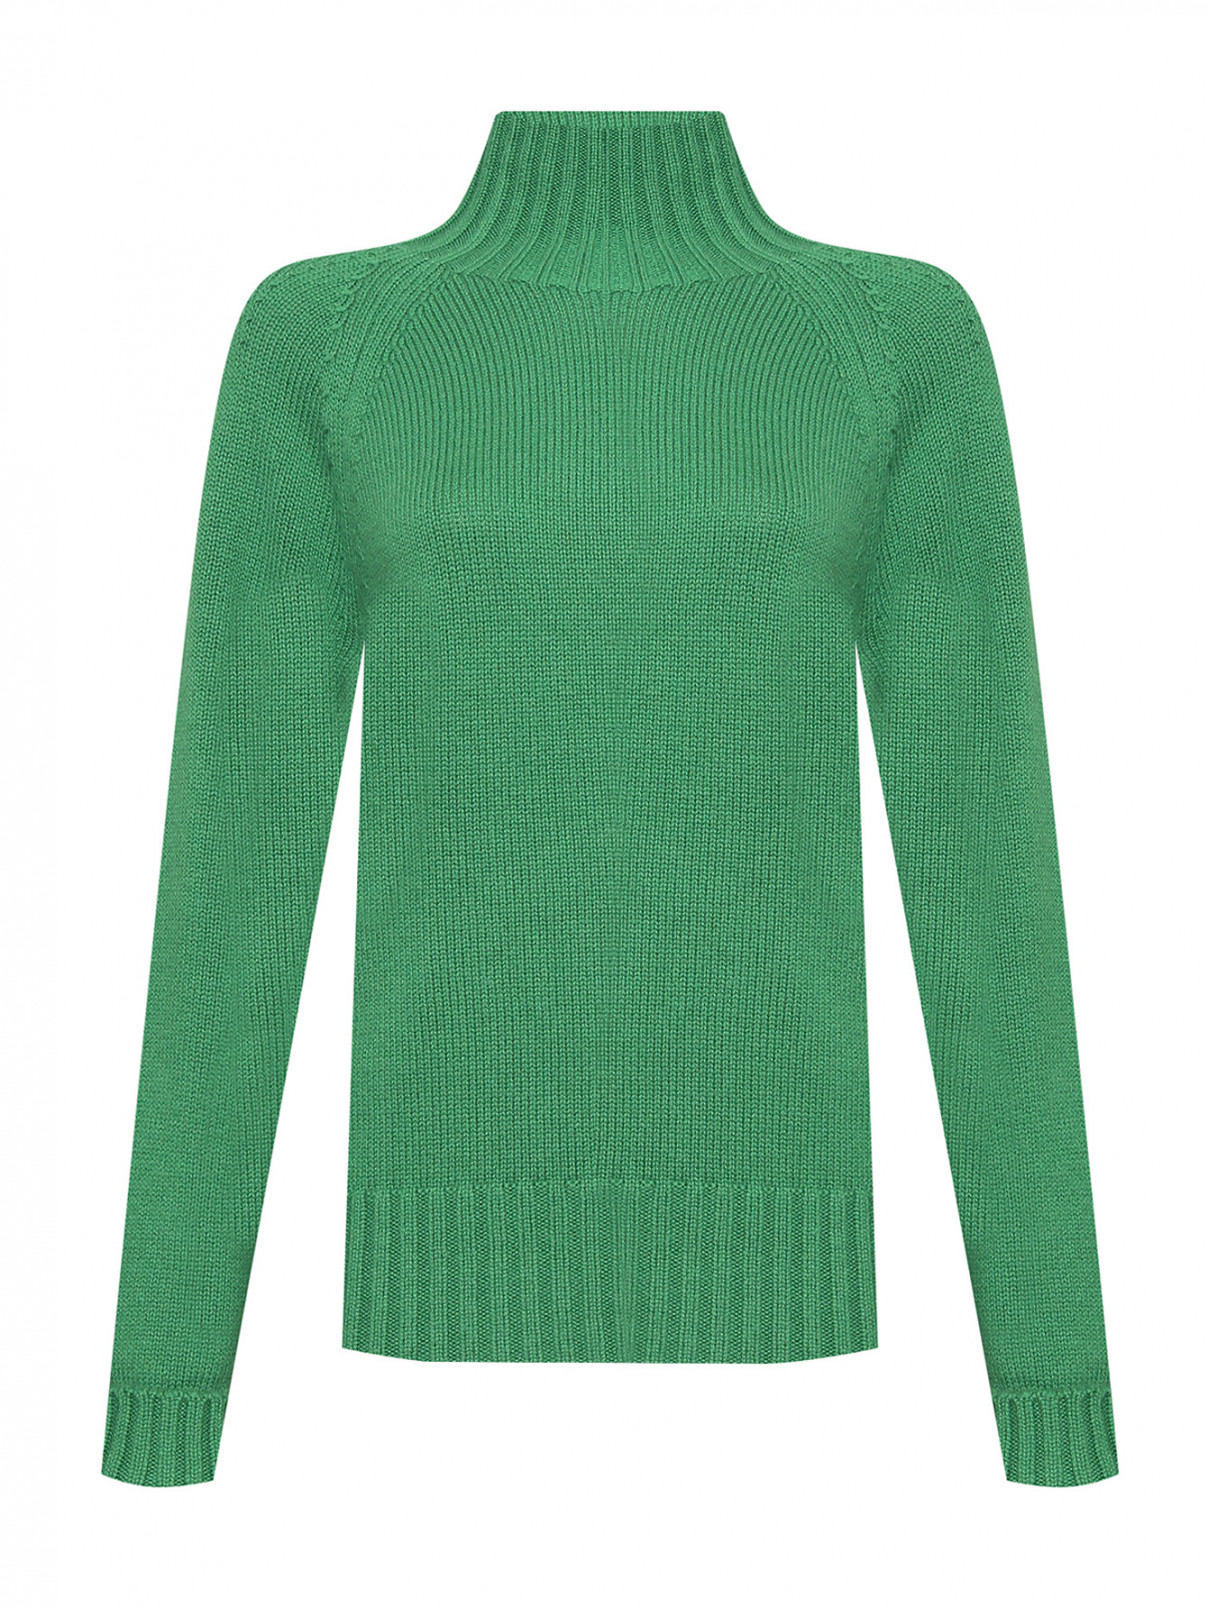 Однотонный свитер из шерсти Max Mara  –  Общий вид  – Цвет:  Зеленый